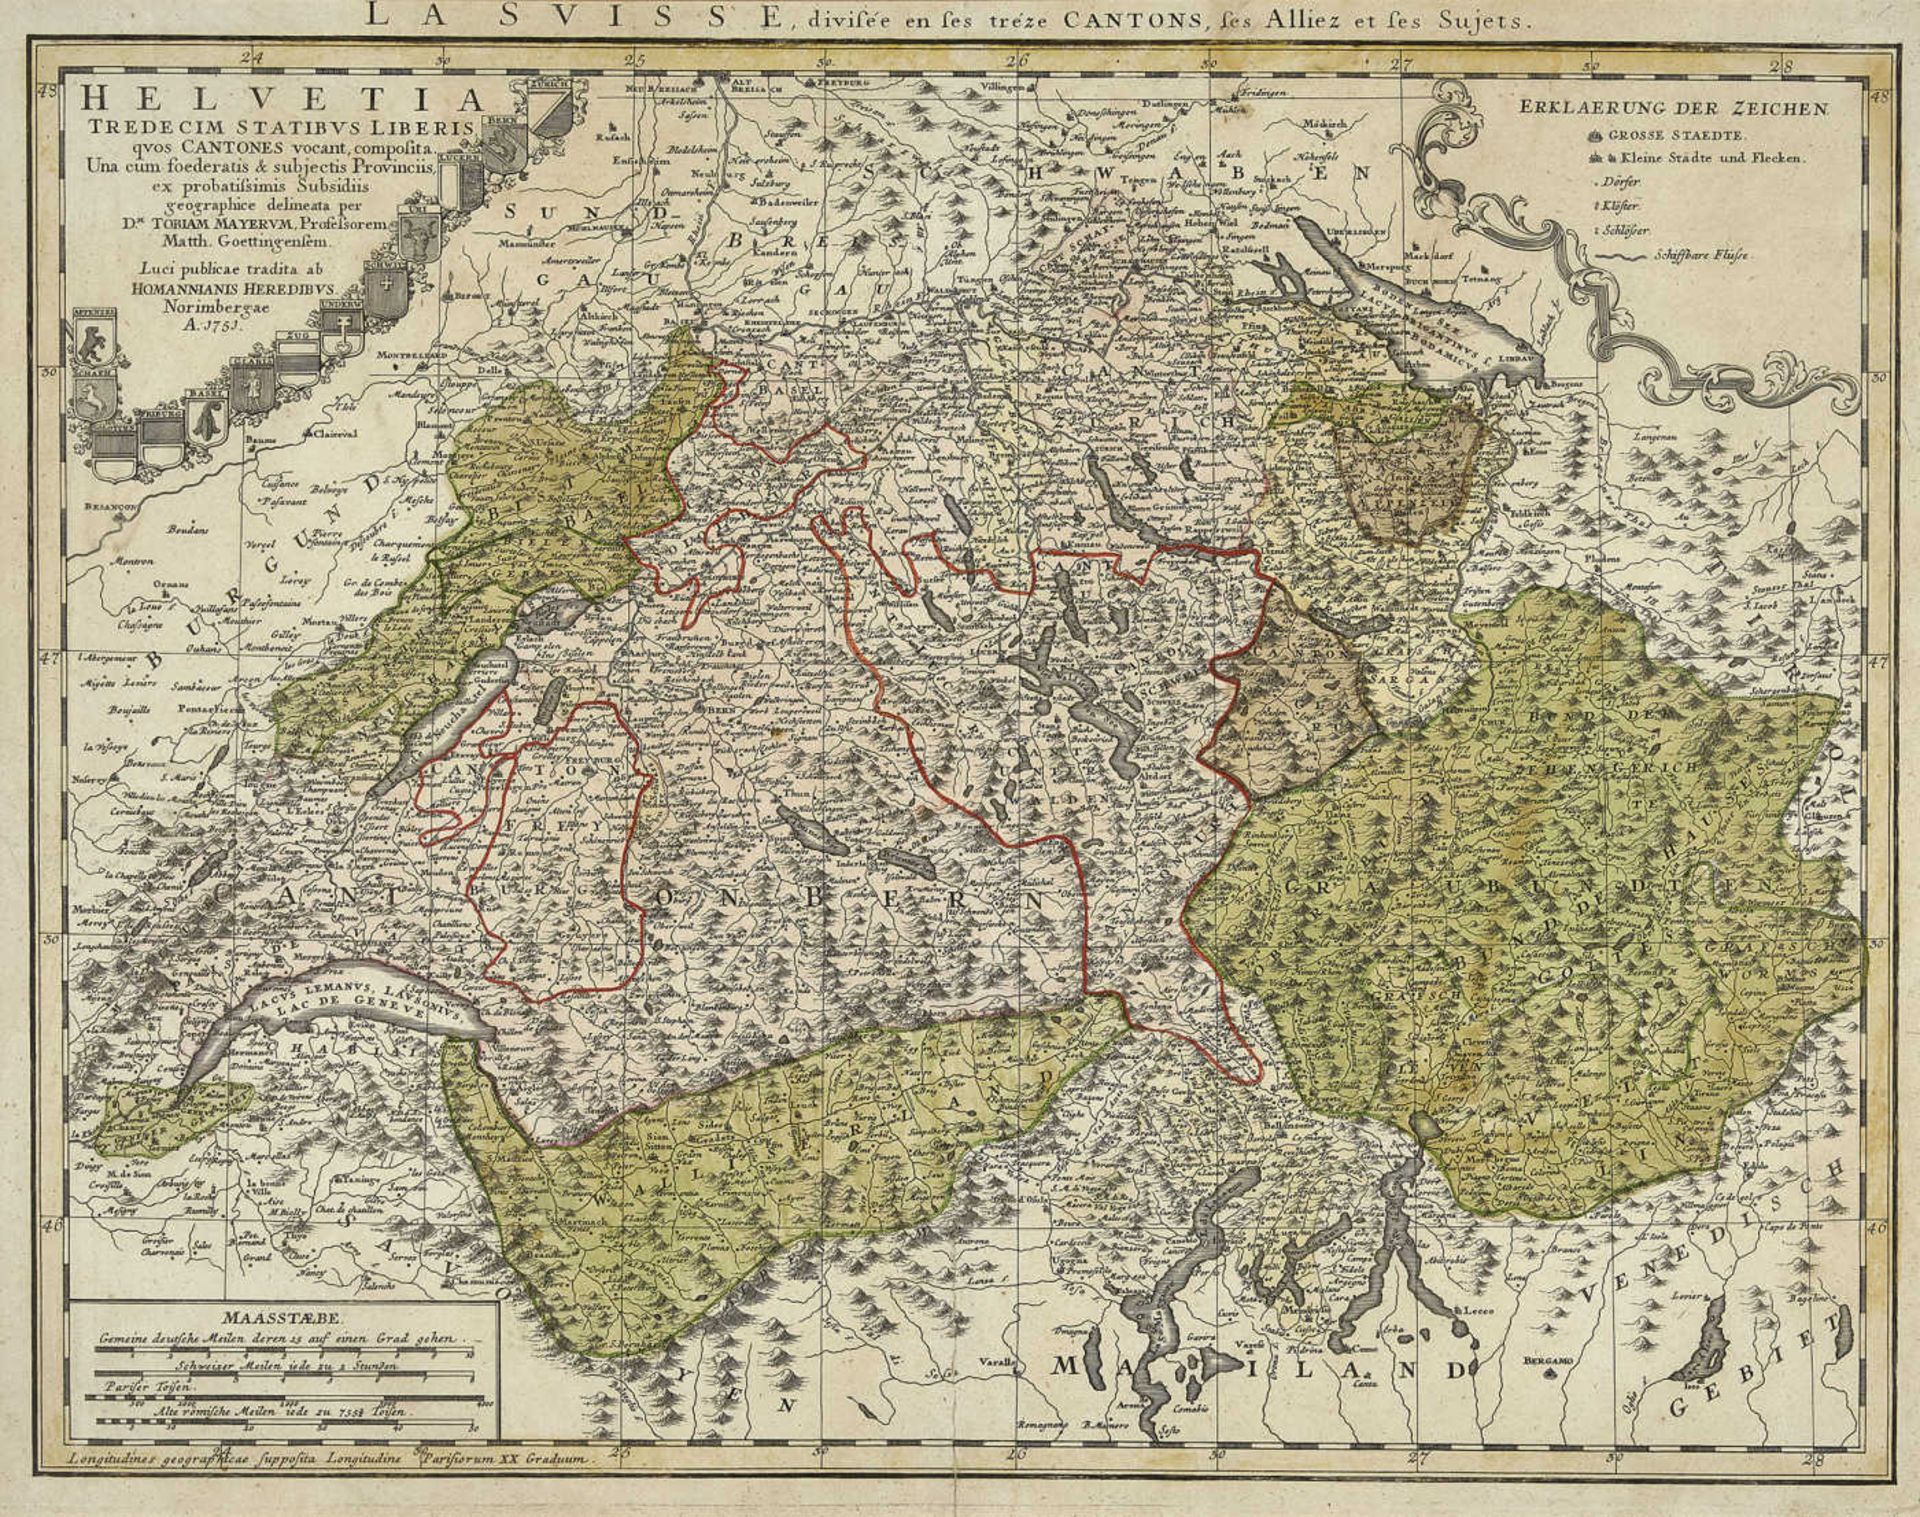 MAYER, TOBIASMarbach 1723 - 1762 GöttingenHelvetia tredecim stratibus liberis quos Cantones vocant